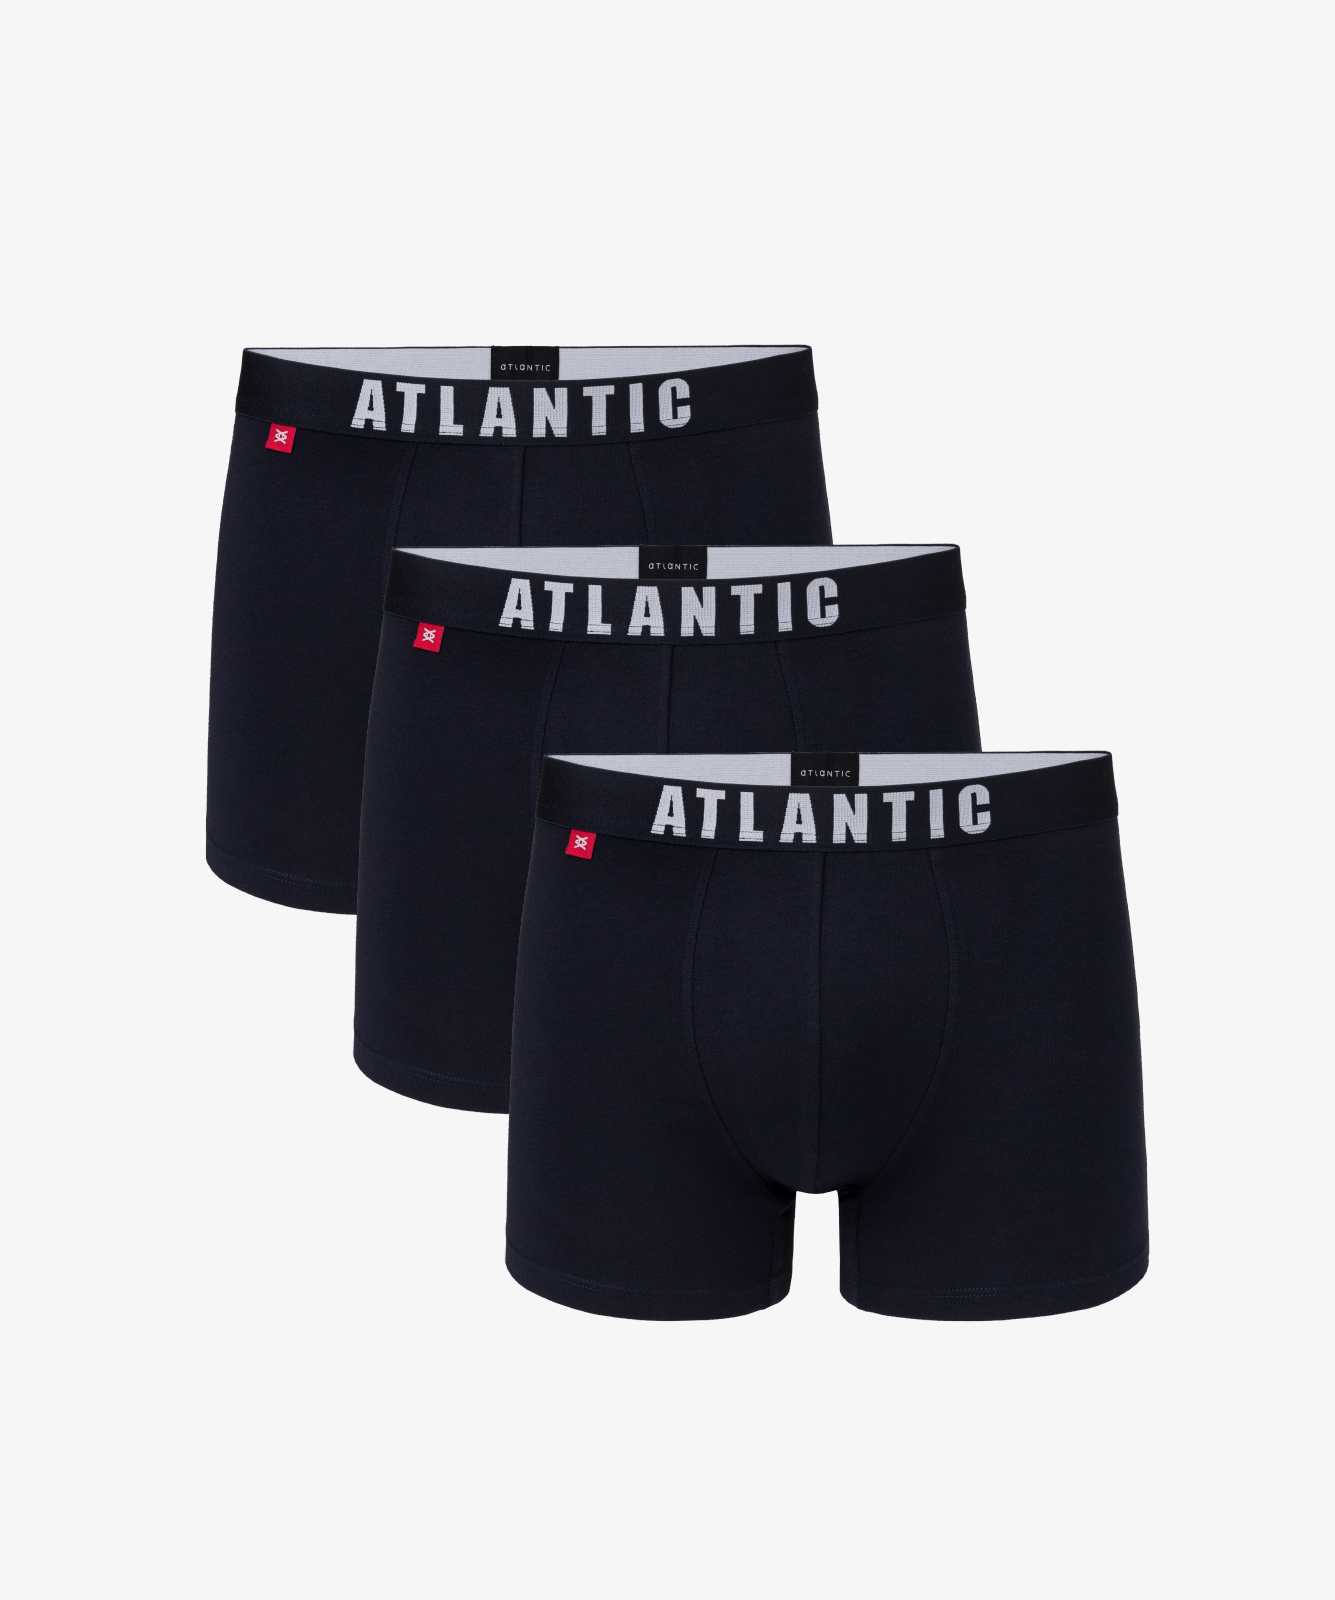 Мужские трусы шорты Atlantic, набор из 3 шт., хлопок, темно-синие, 3MH-011